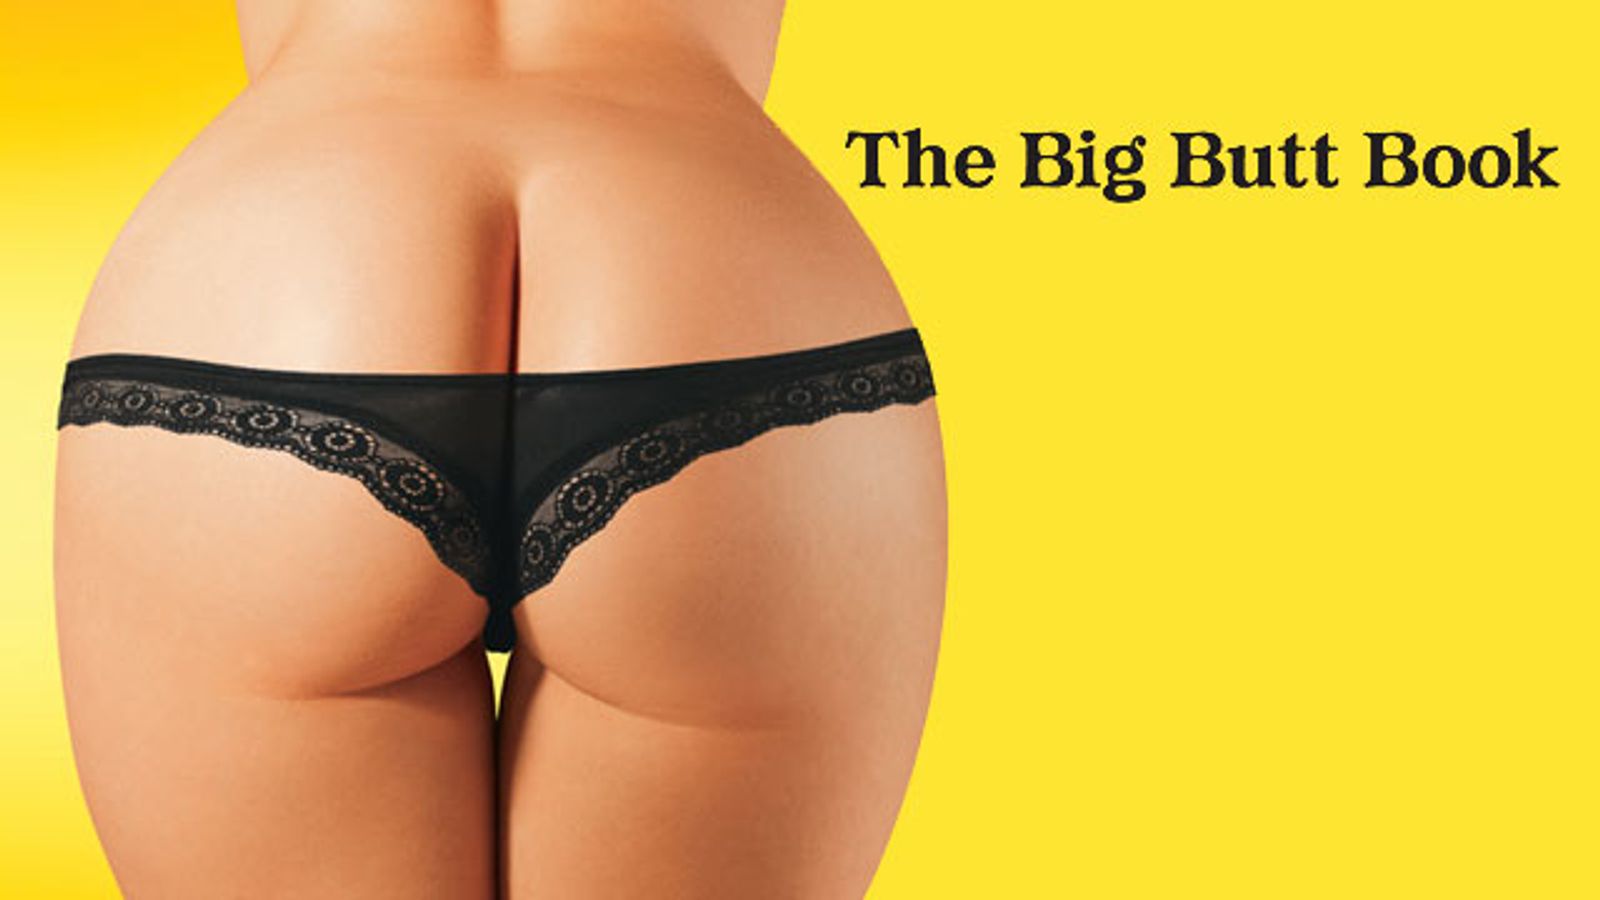 Buttman Featured In Taschen's New 'Big Butt Book'